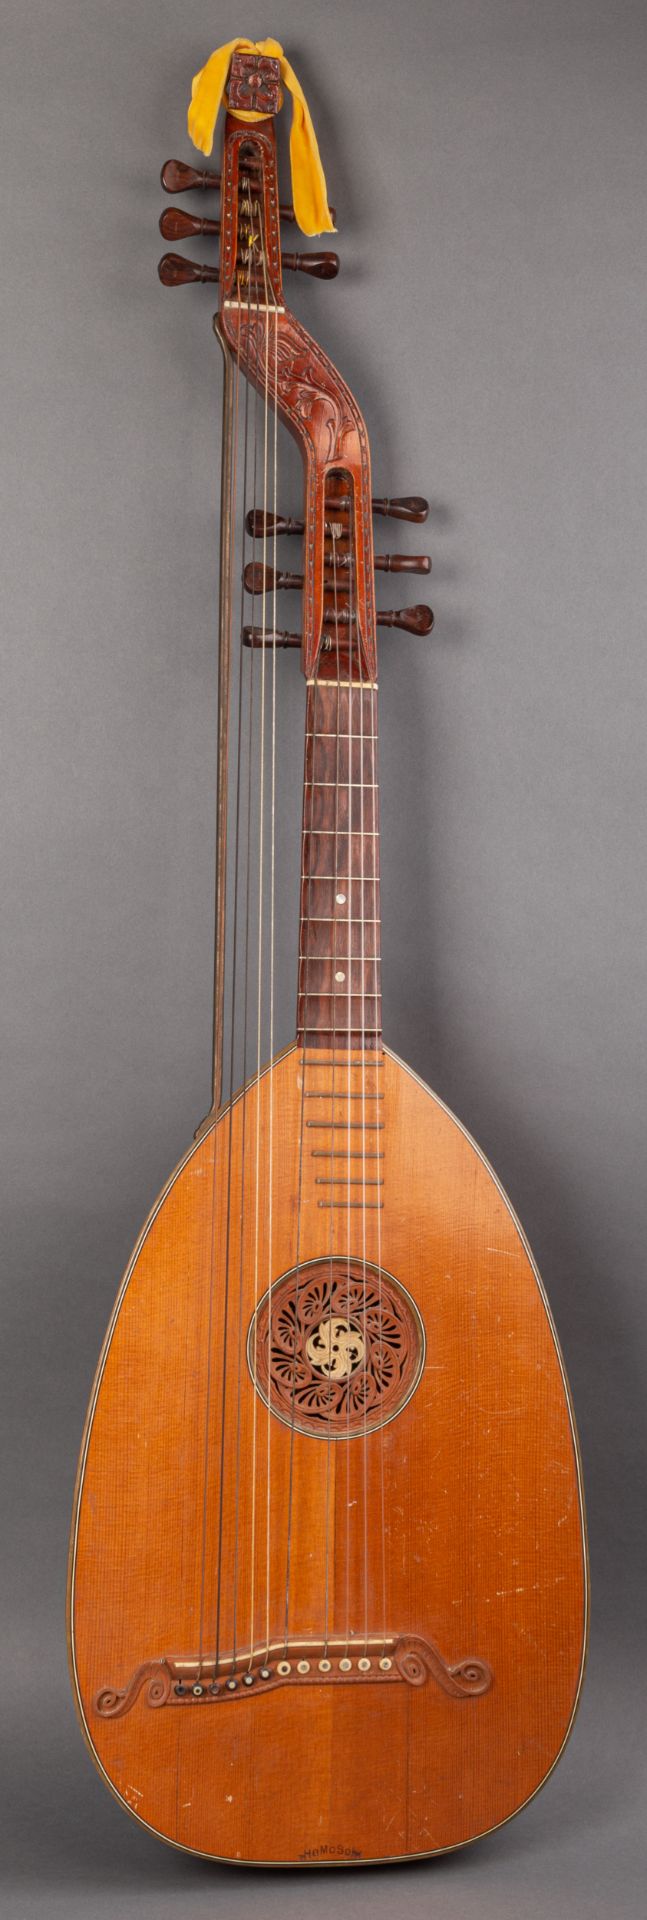 Deutsche Basslaute, zwölfsaitig, um 1920